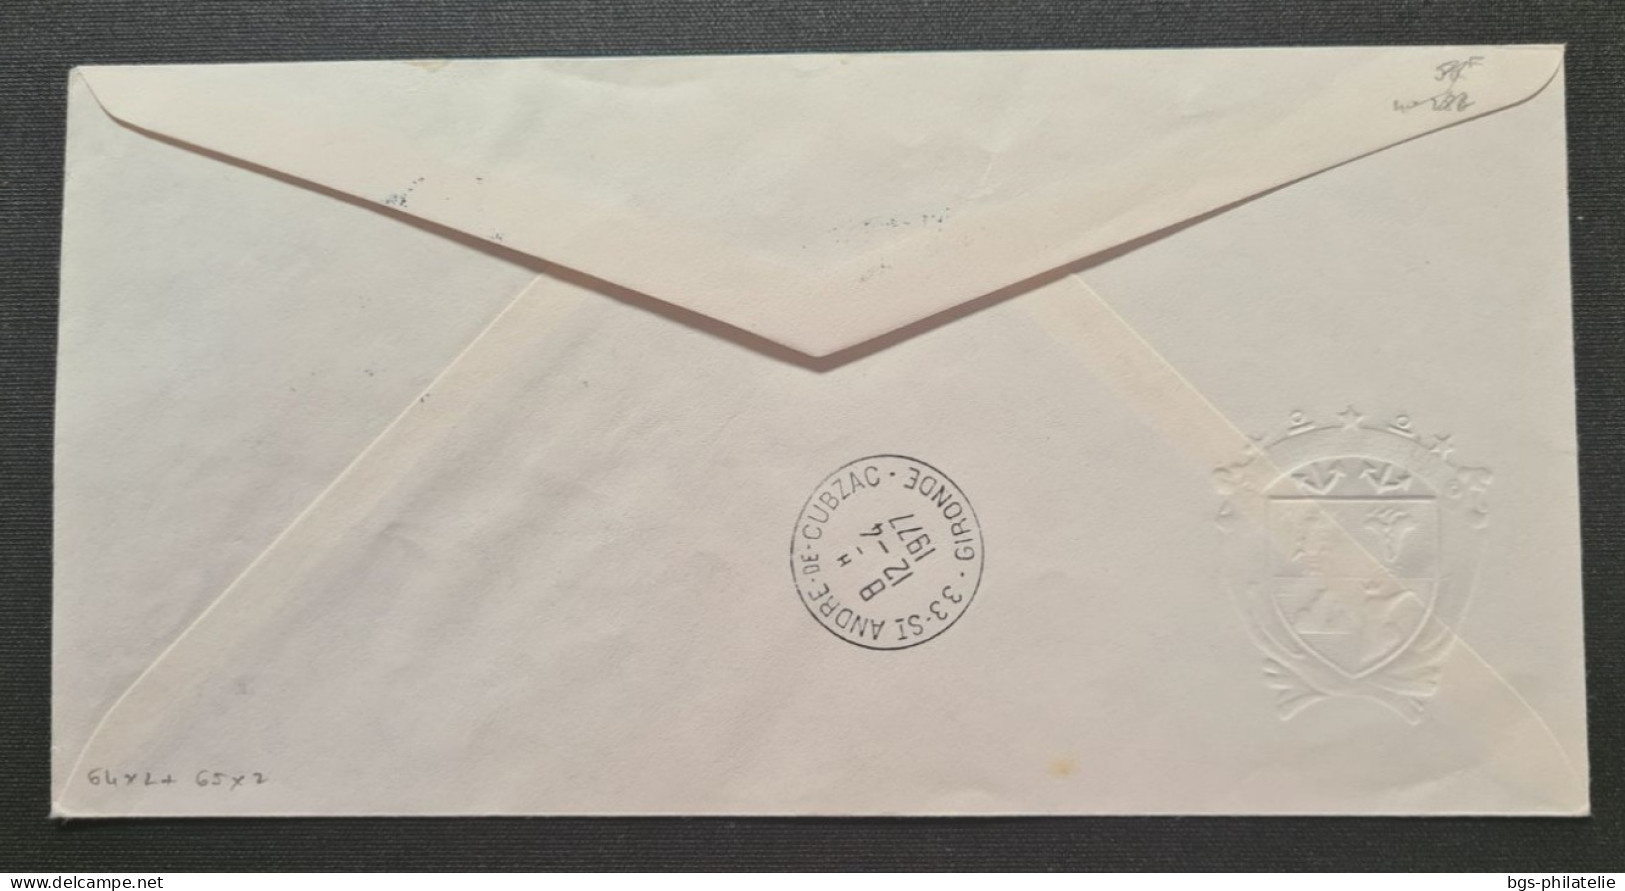 TAAF,  Timbres Numéros 64×2 Et 65×2 ( Cote 20€) Oblitérés De Kerguelen Le 2/2/1977. - Lettres & Documents